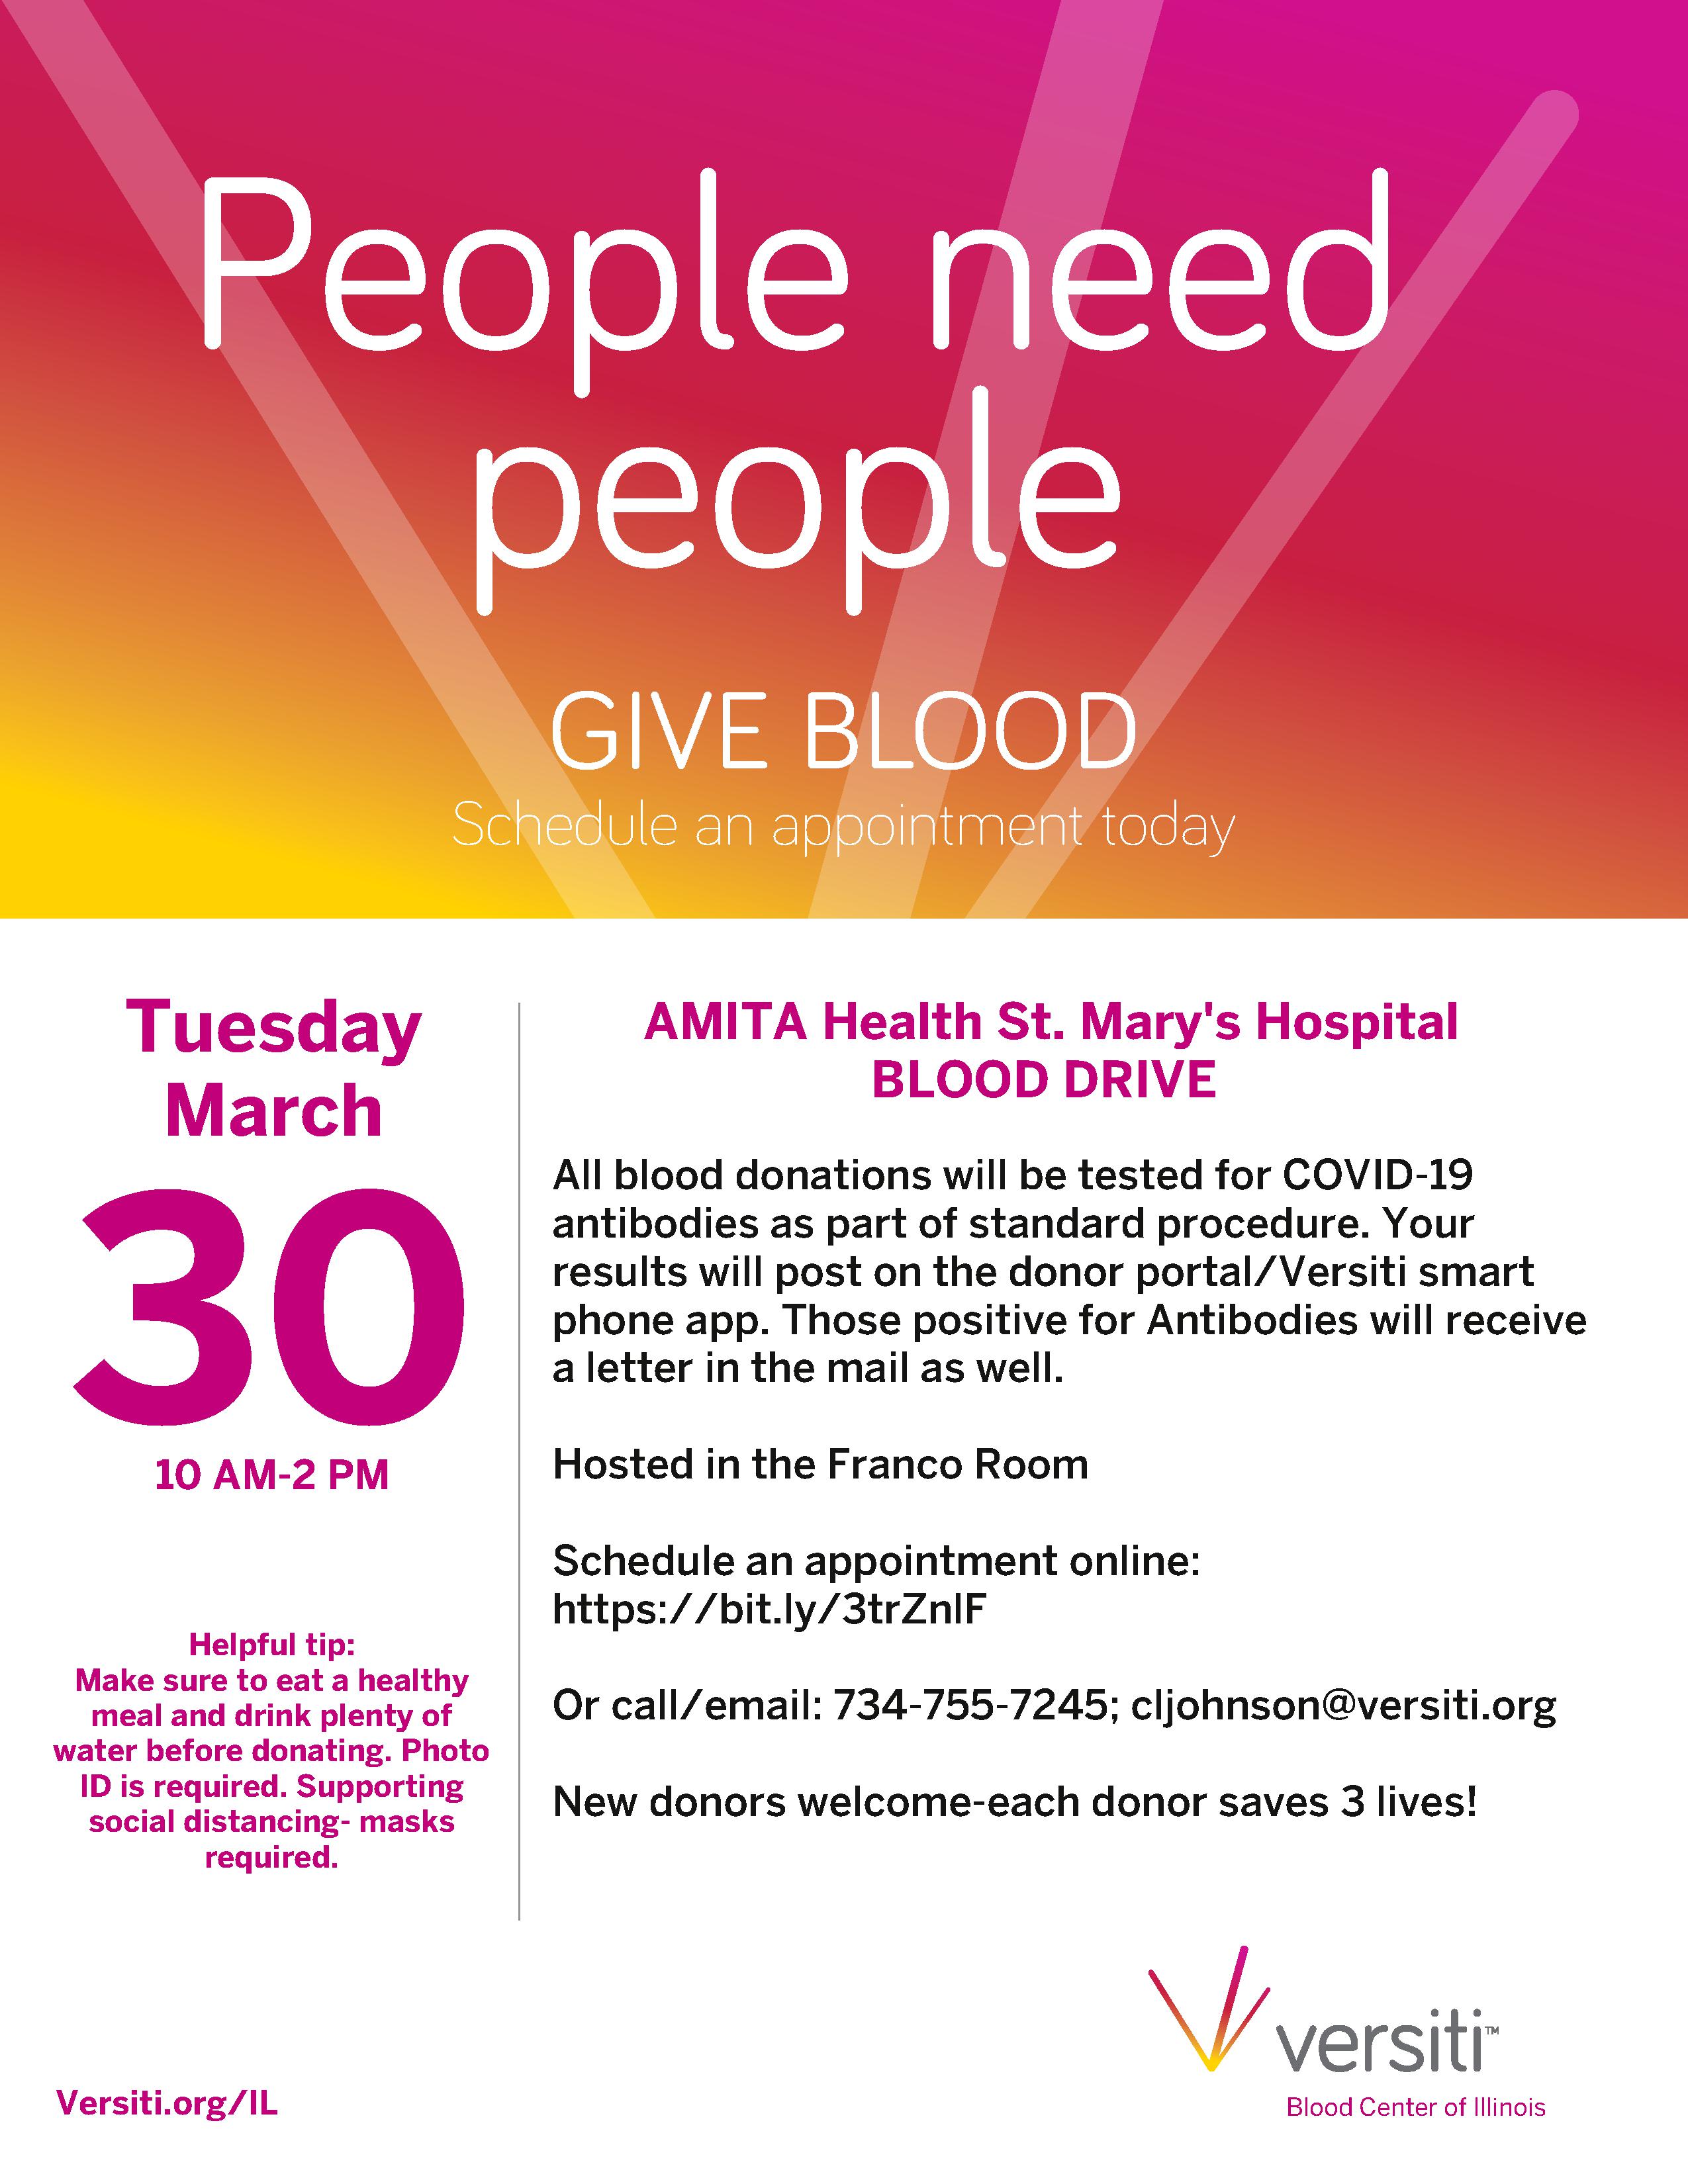 AMITA Health St. Mary's Hospital BLOOD DRIVE